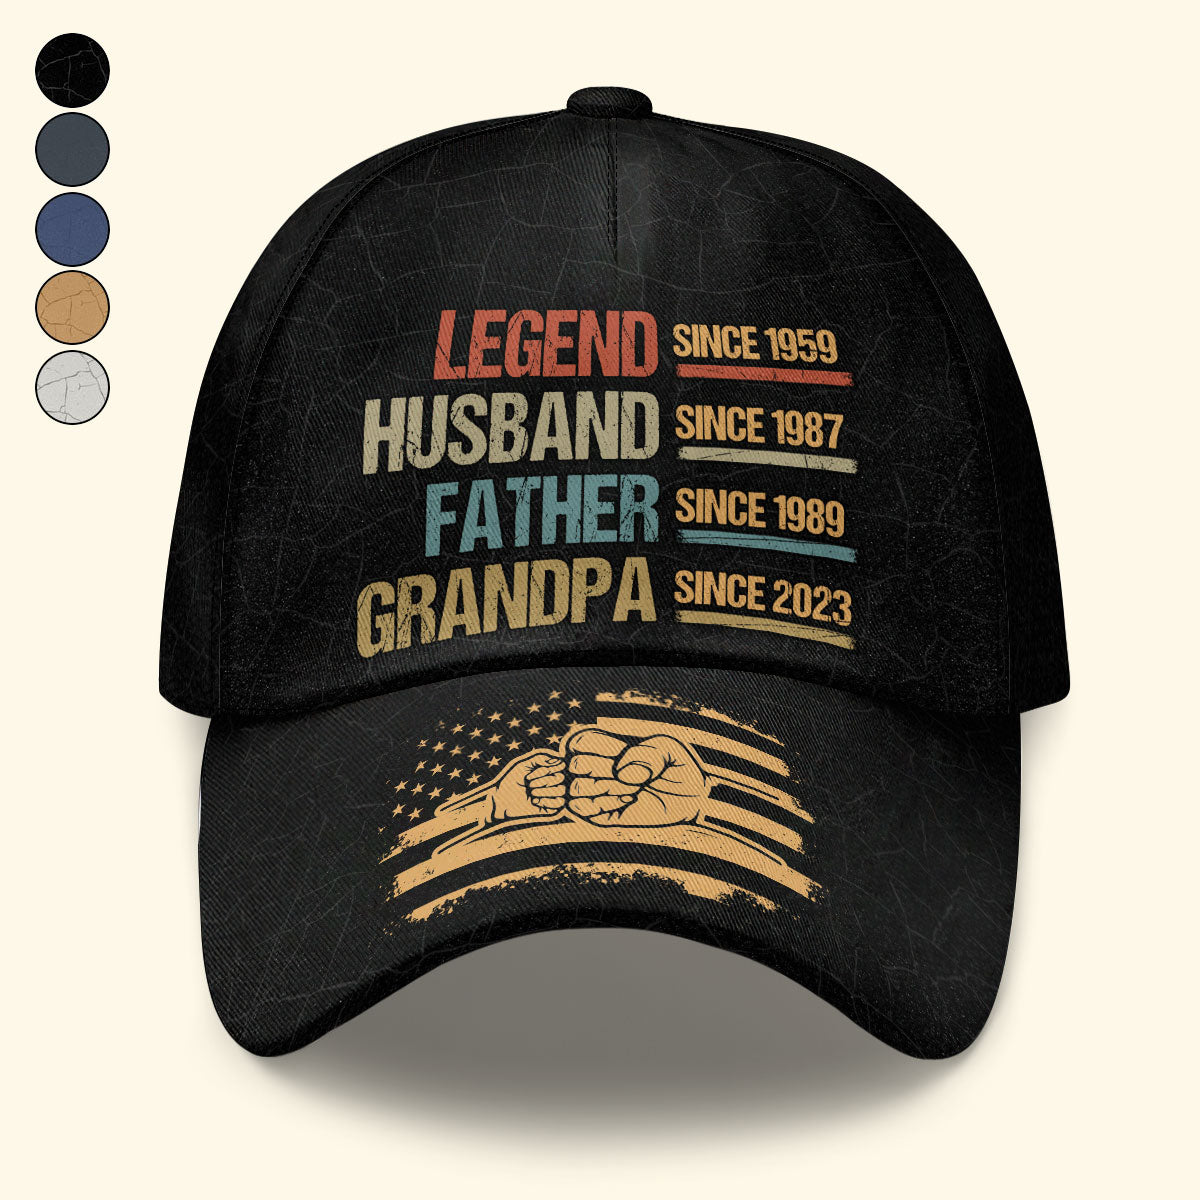 Legend Husband Father Grandpa Since - Personalized Classic Cap TCCCHN17